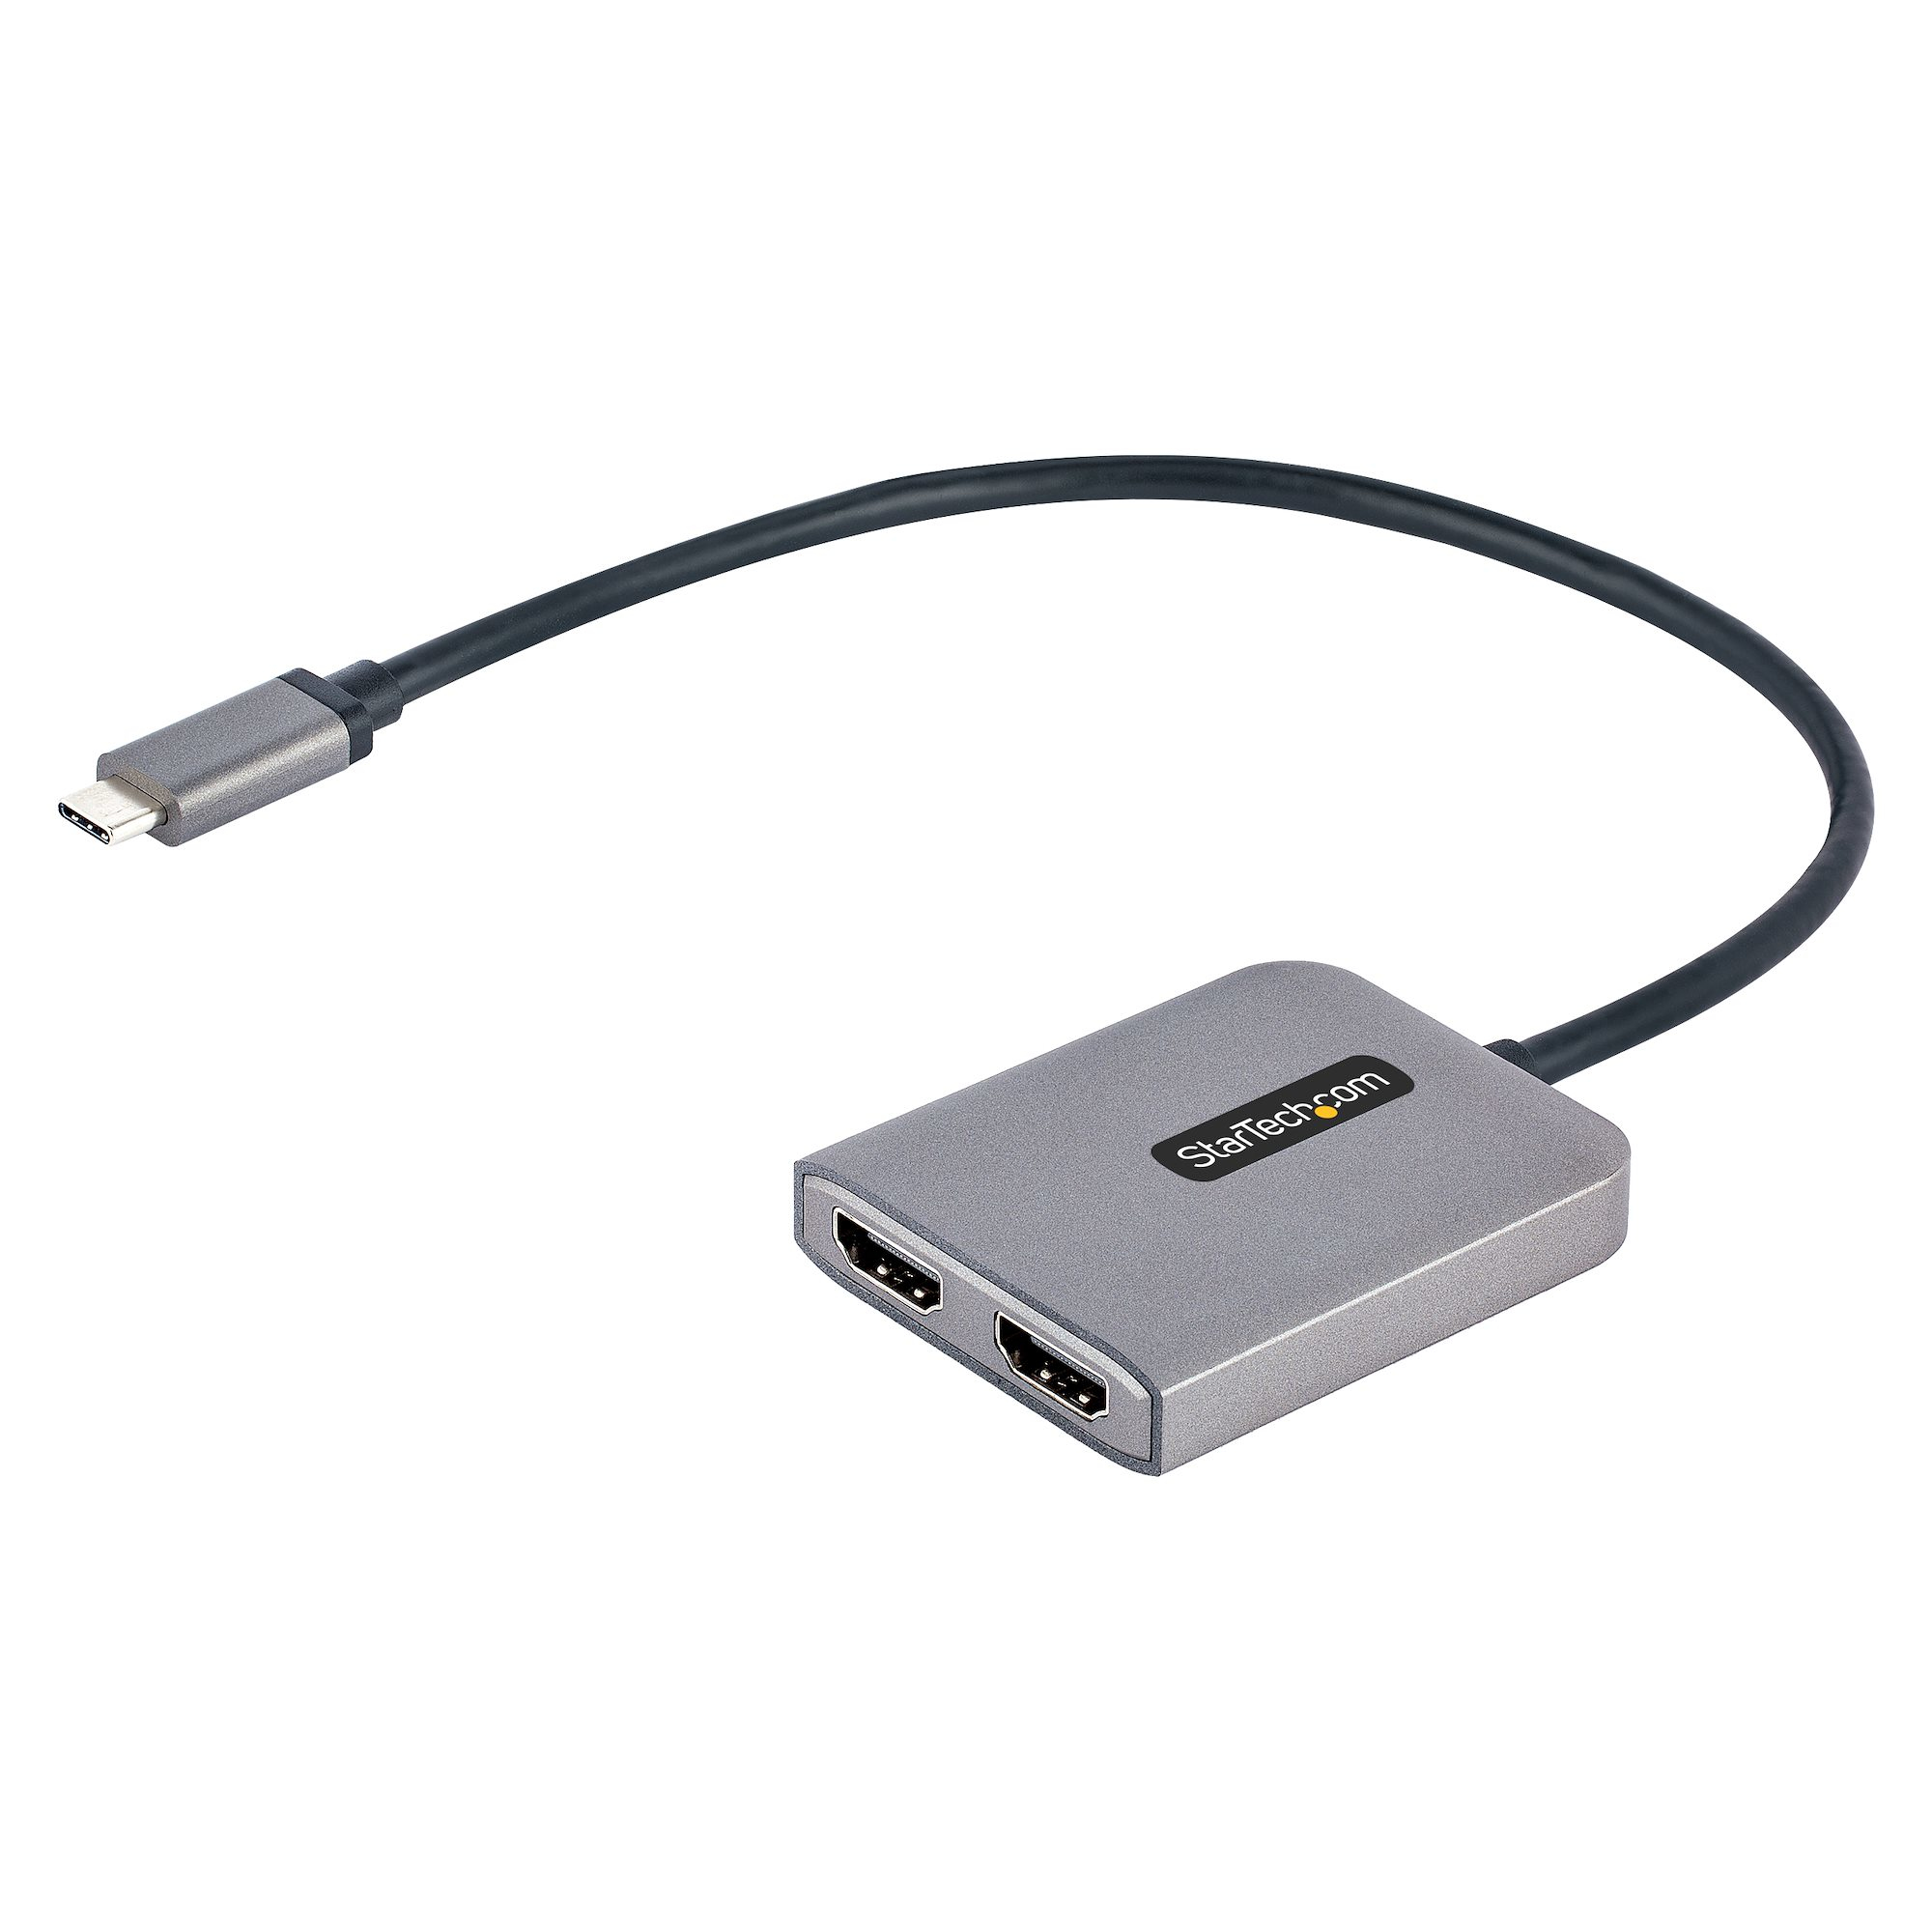 Hub USB Sitecom Adaptateur USB C vers USB A femelle - USB-C TO USB ADAPTER